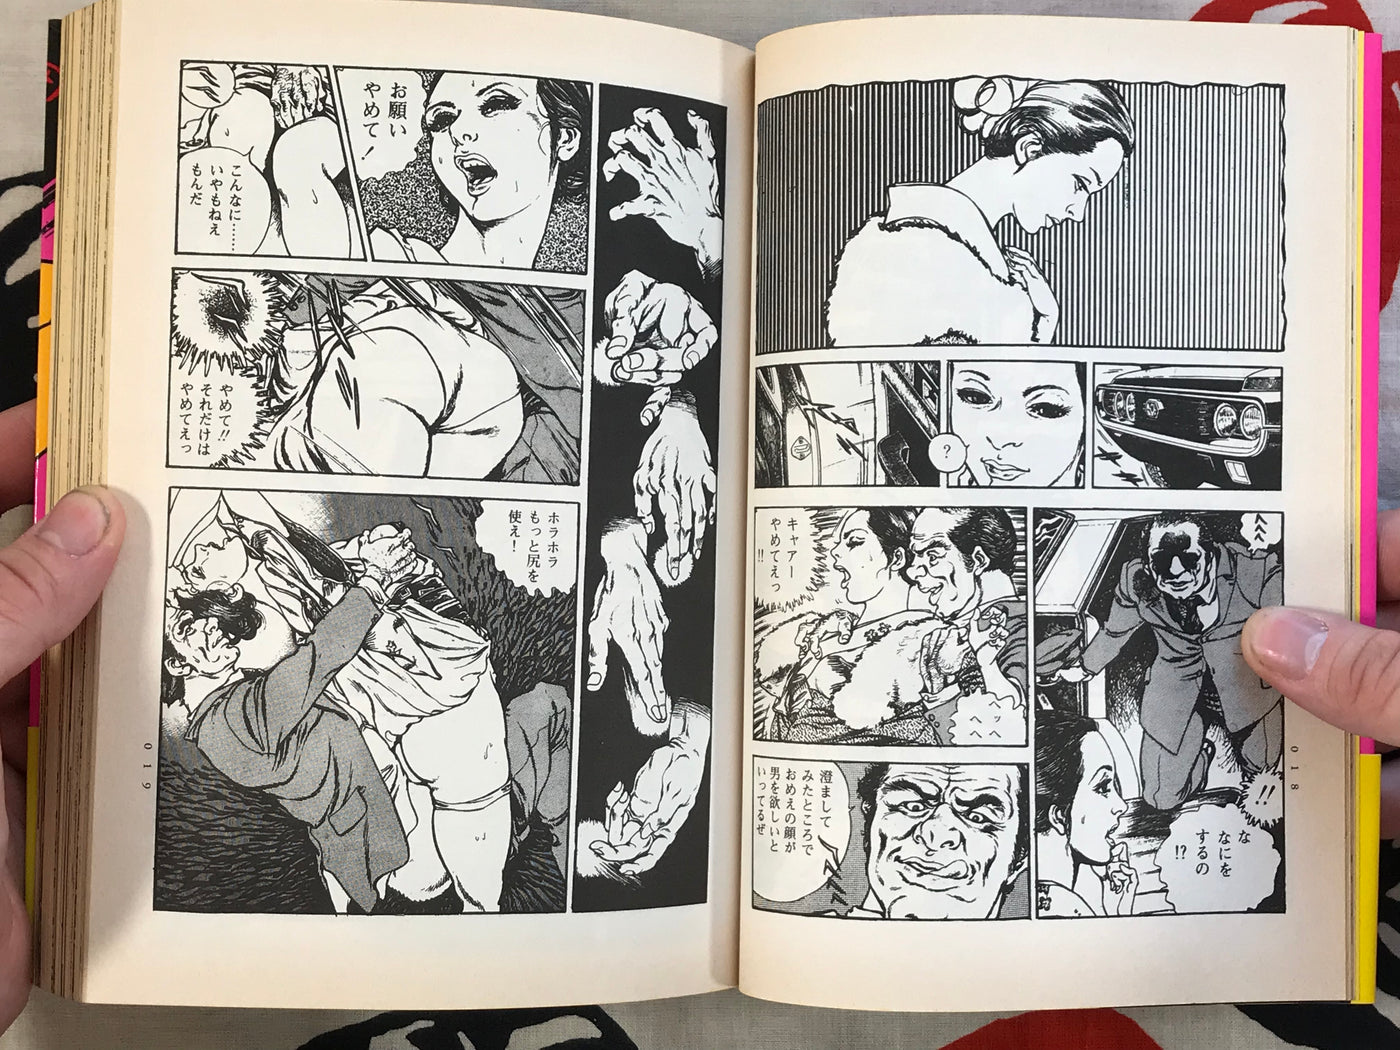 Ero Manga Maniacs (1998)